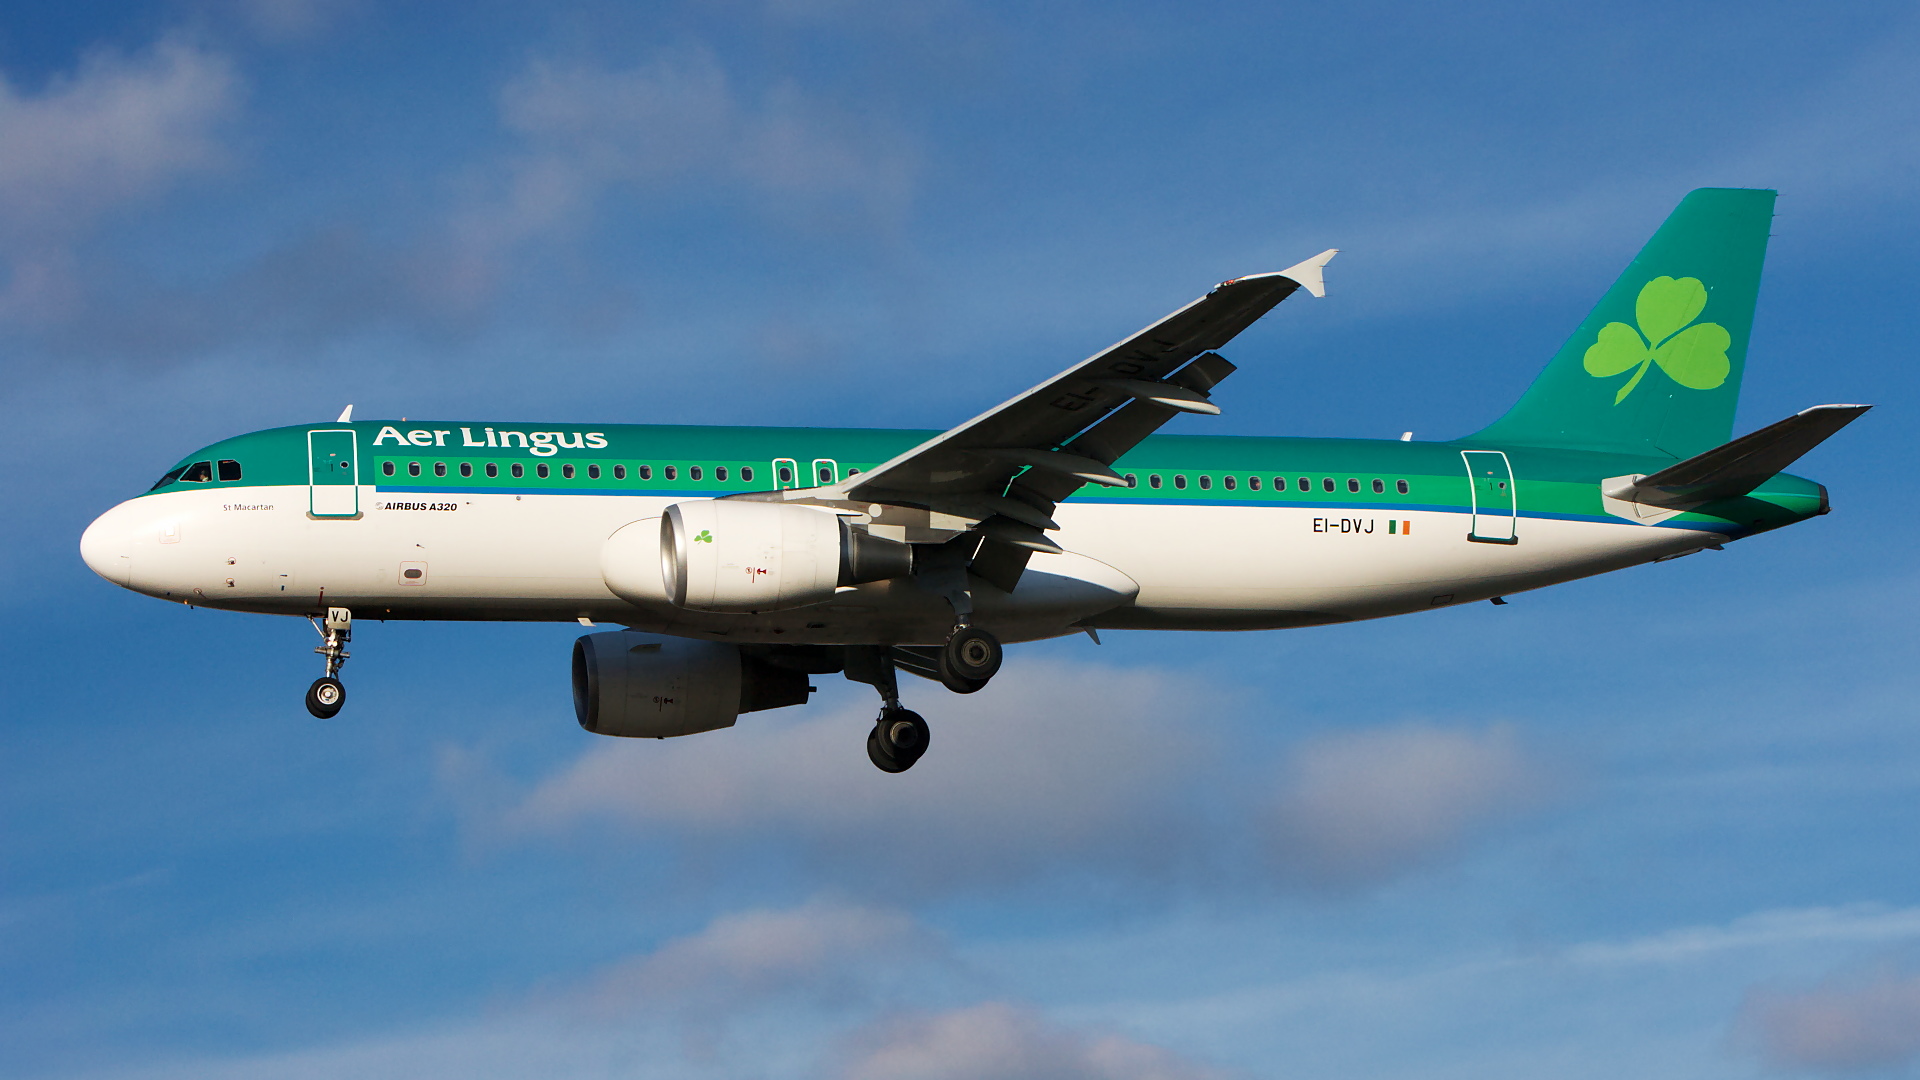 EI-DVJ ✈ Aer Lingus Airbus A320-214 @ London-Heathrow